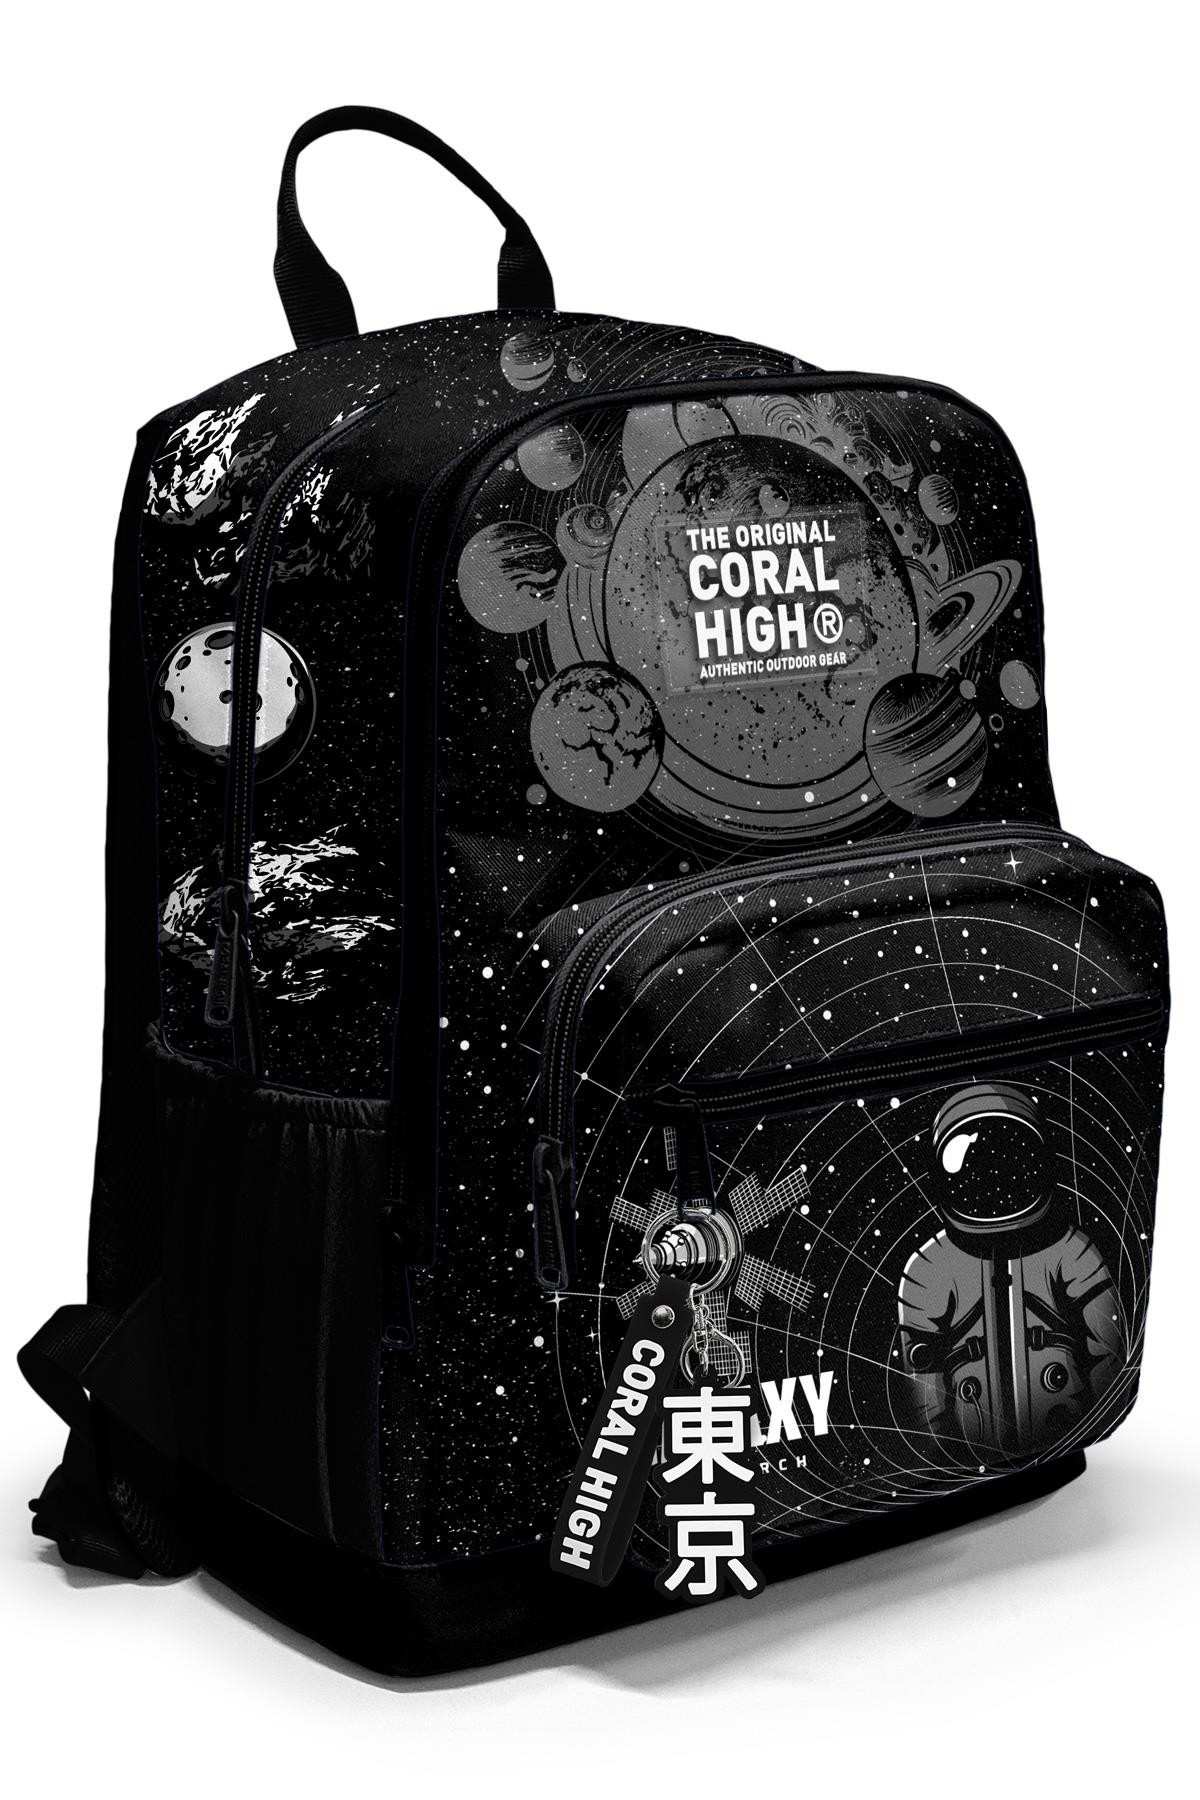 Coral High Siyah Galaxy Desenli Okul Sırt Çantası 23644